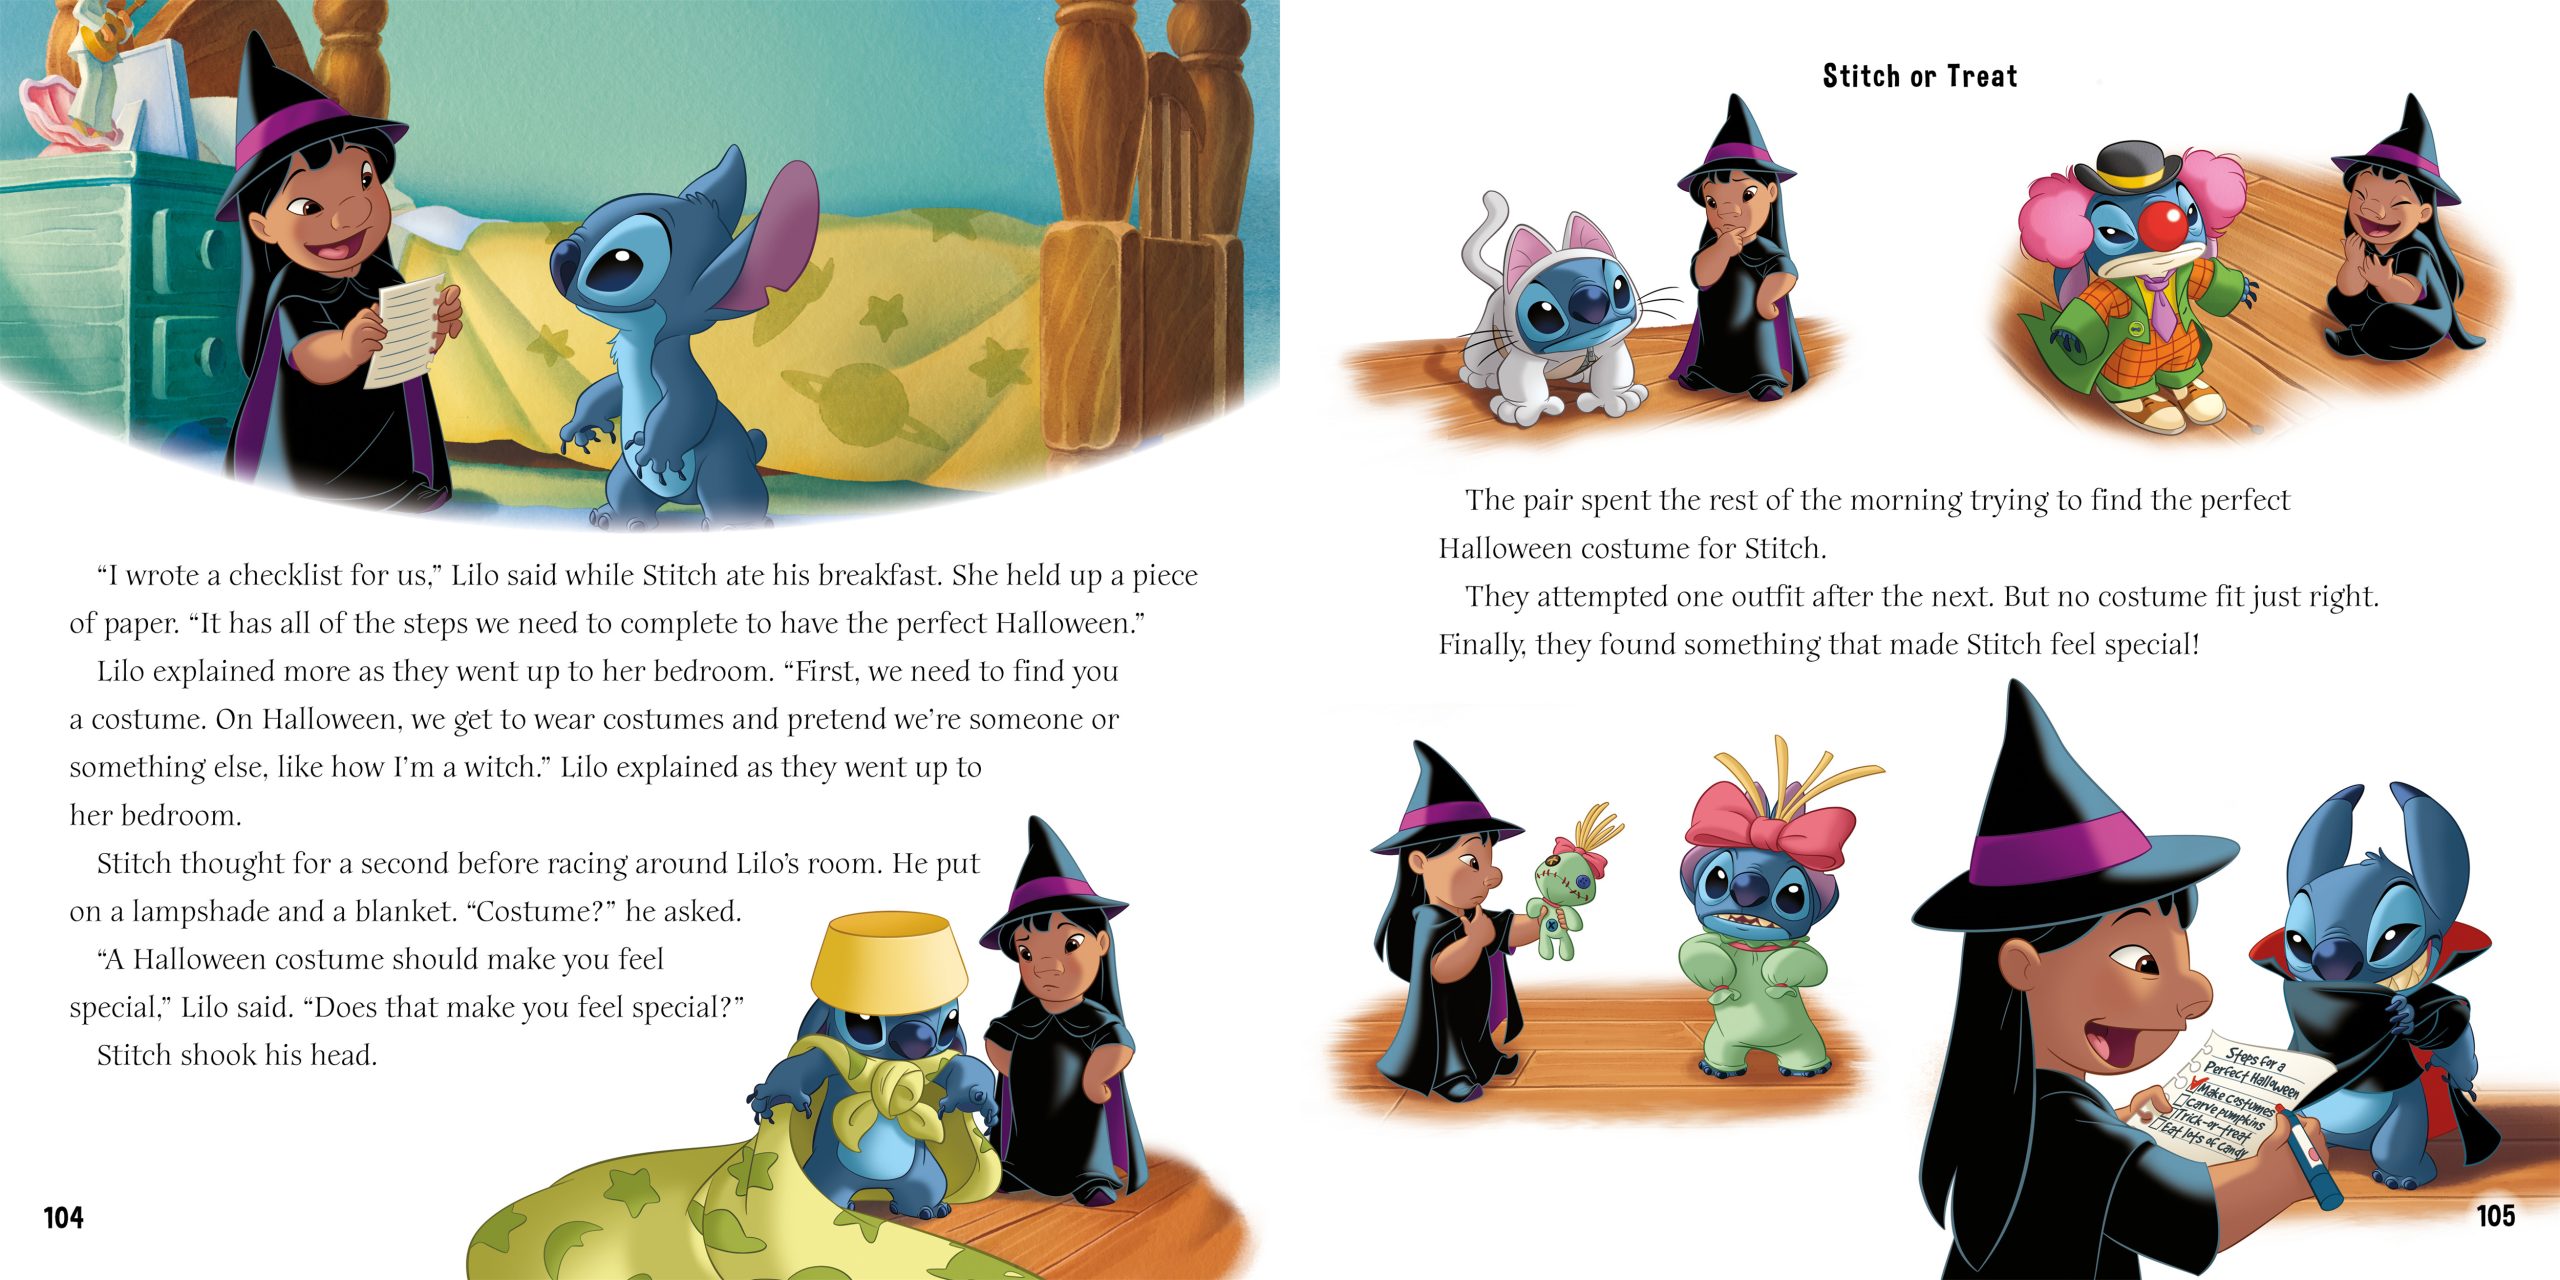 Disney Lilo & Stitch: 7 Days of Lilo & Stitch Stories – Igloo Books